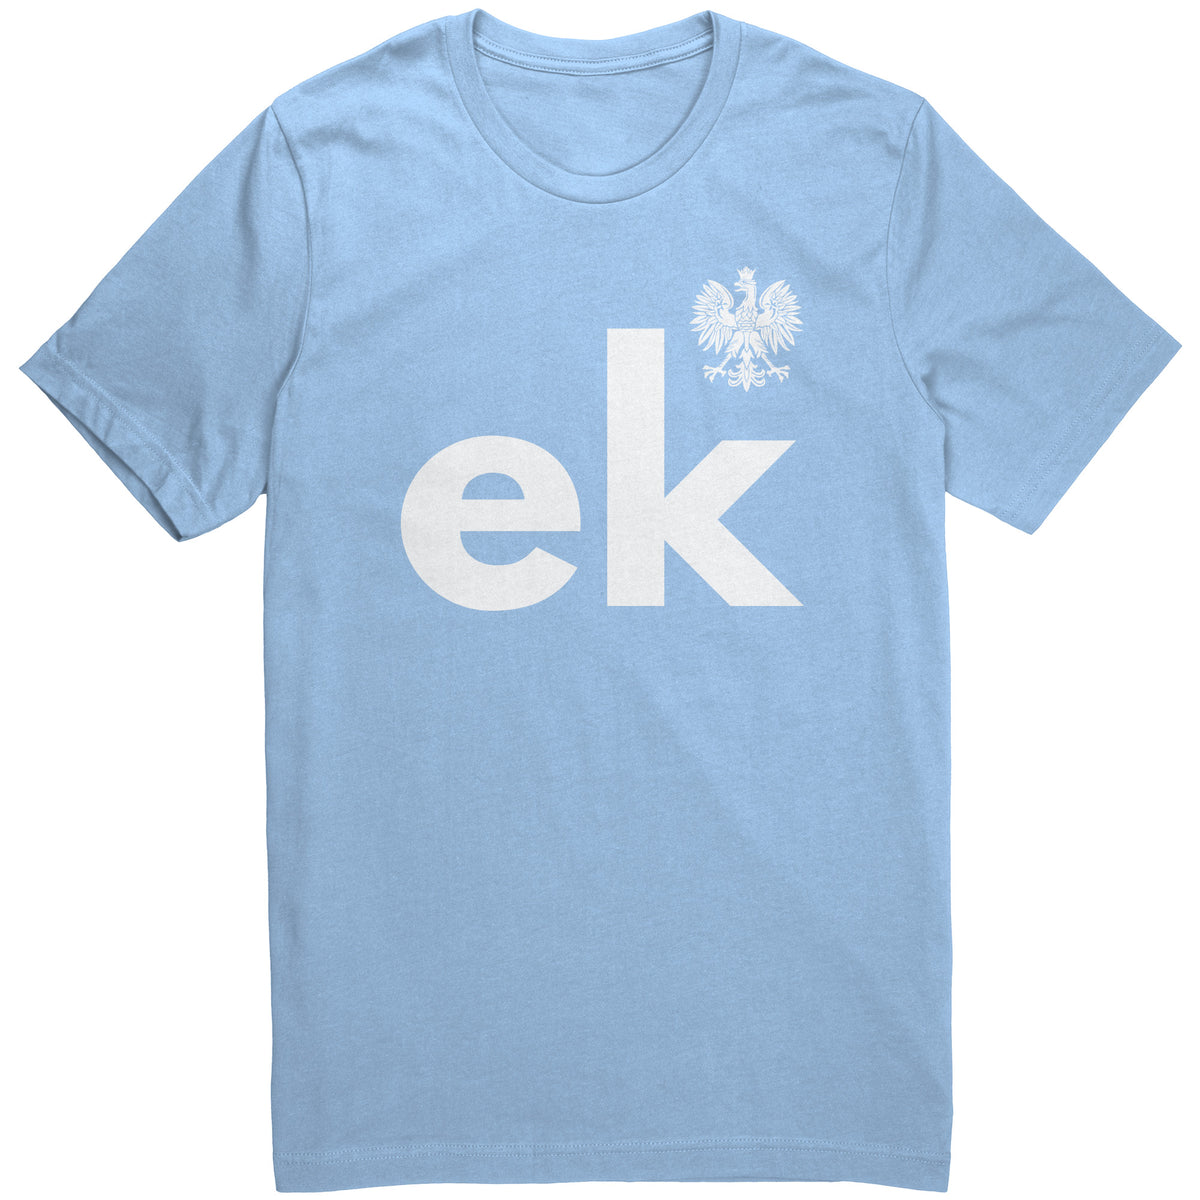 Last name unisex shirt with eagle -ek – My Polish Heritage